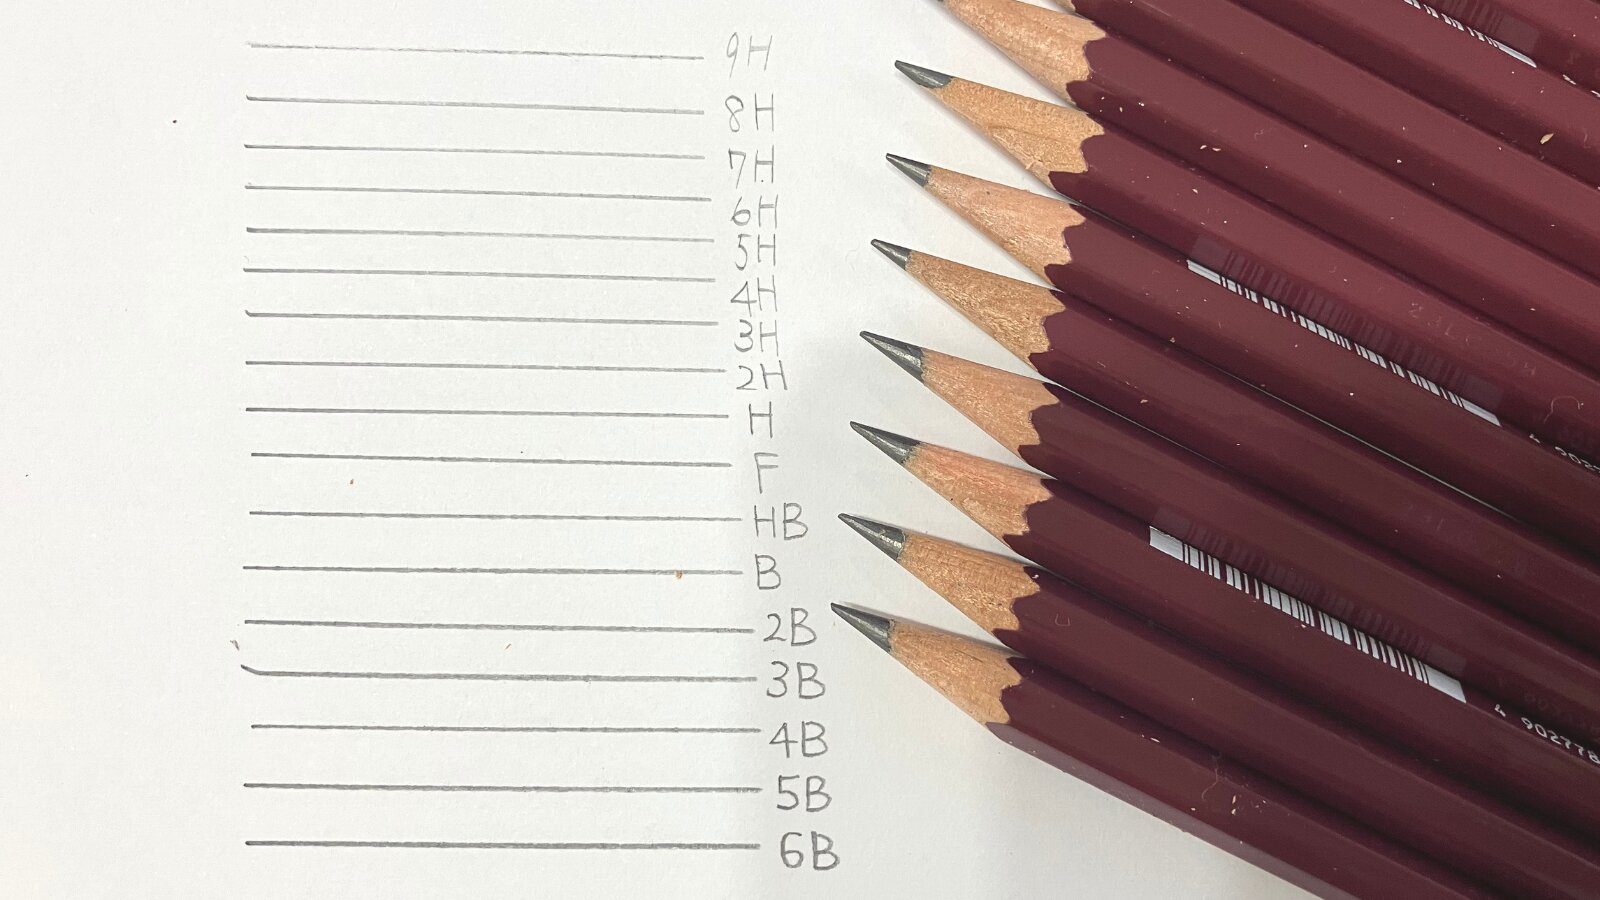 鉛筆の濃さ9H~6Bの比較